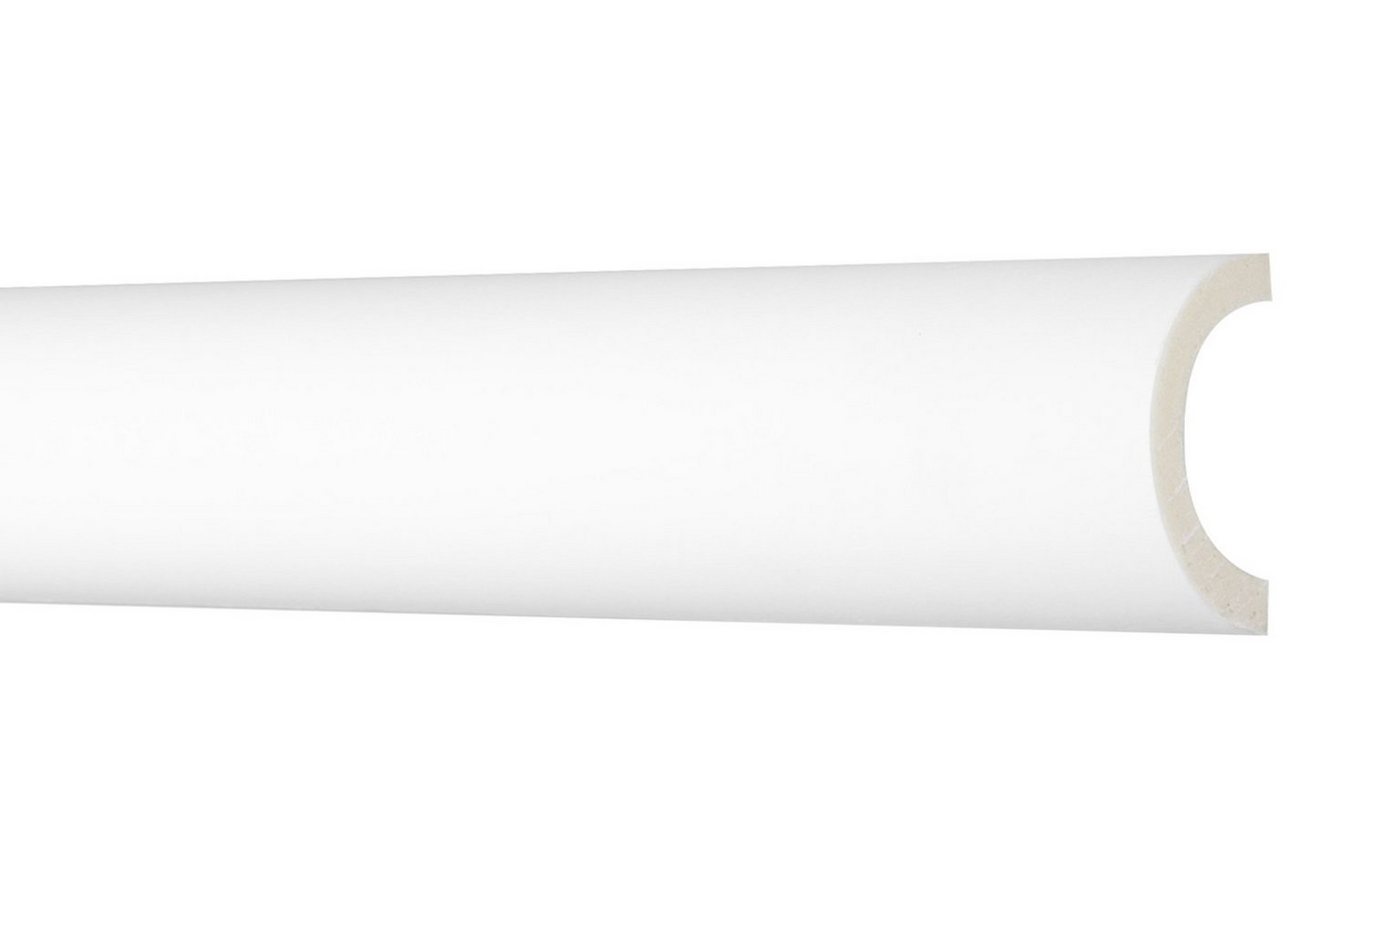 Hexim Perfect Stuckleiste AD 371, Flachleiste aus PU Serie 1 - Stuckleiste glatt, weißes Zierprofil, hart & stoßfest - Wandleiste vorgrundiert von Hexim Perfect